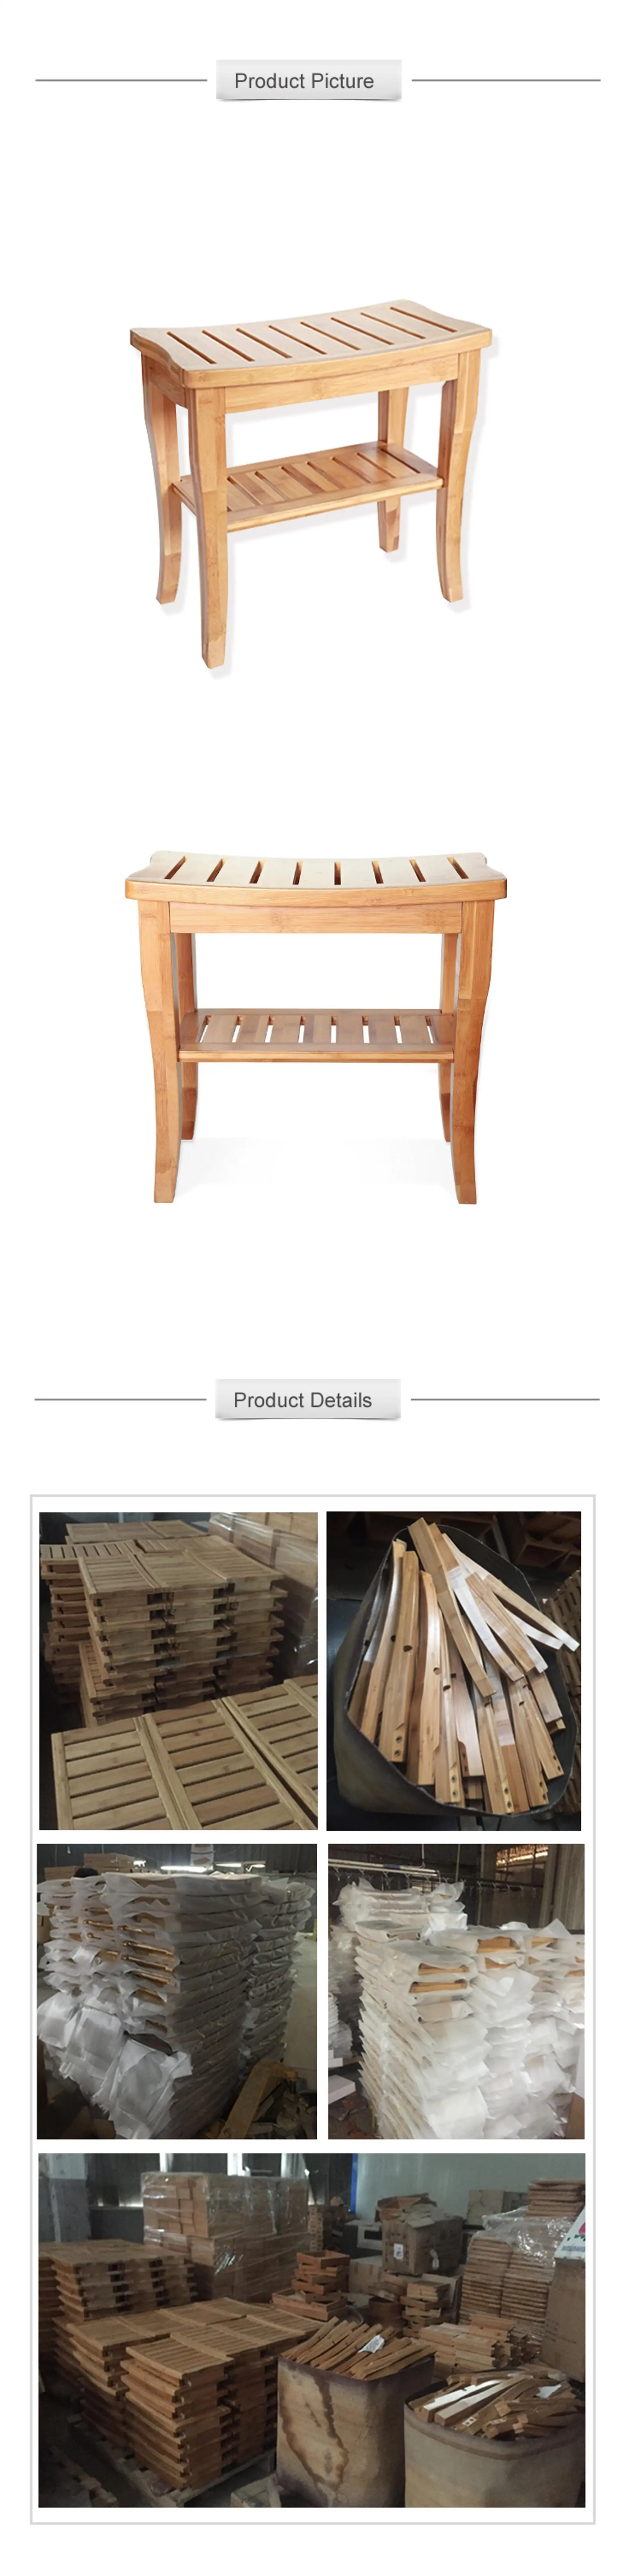 1.Bamboo Shower Seat.jpg